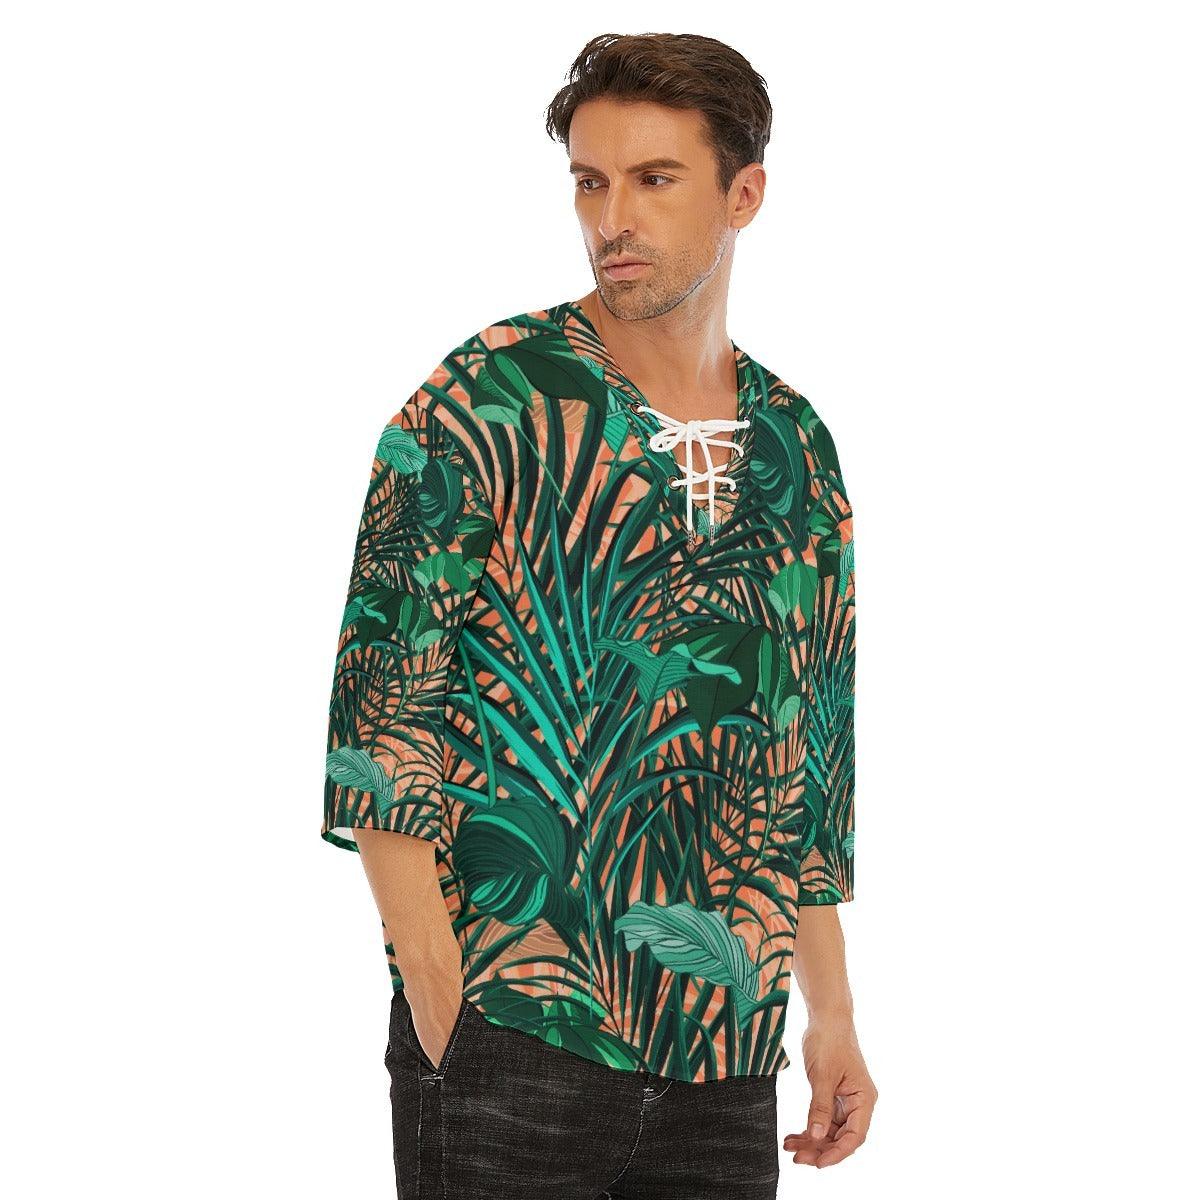 Lace Up Casual T-Shirt-Orange Tropics - Premium  from Elementologie - Just $19.99! Shop now at Elementologie